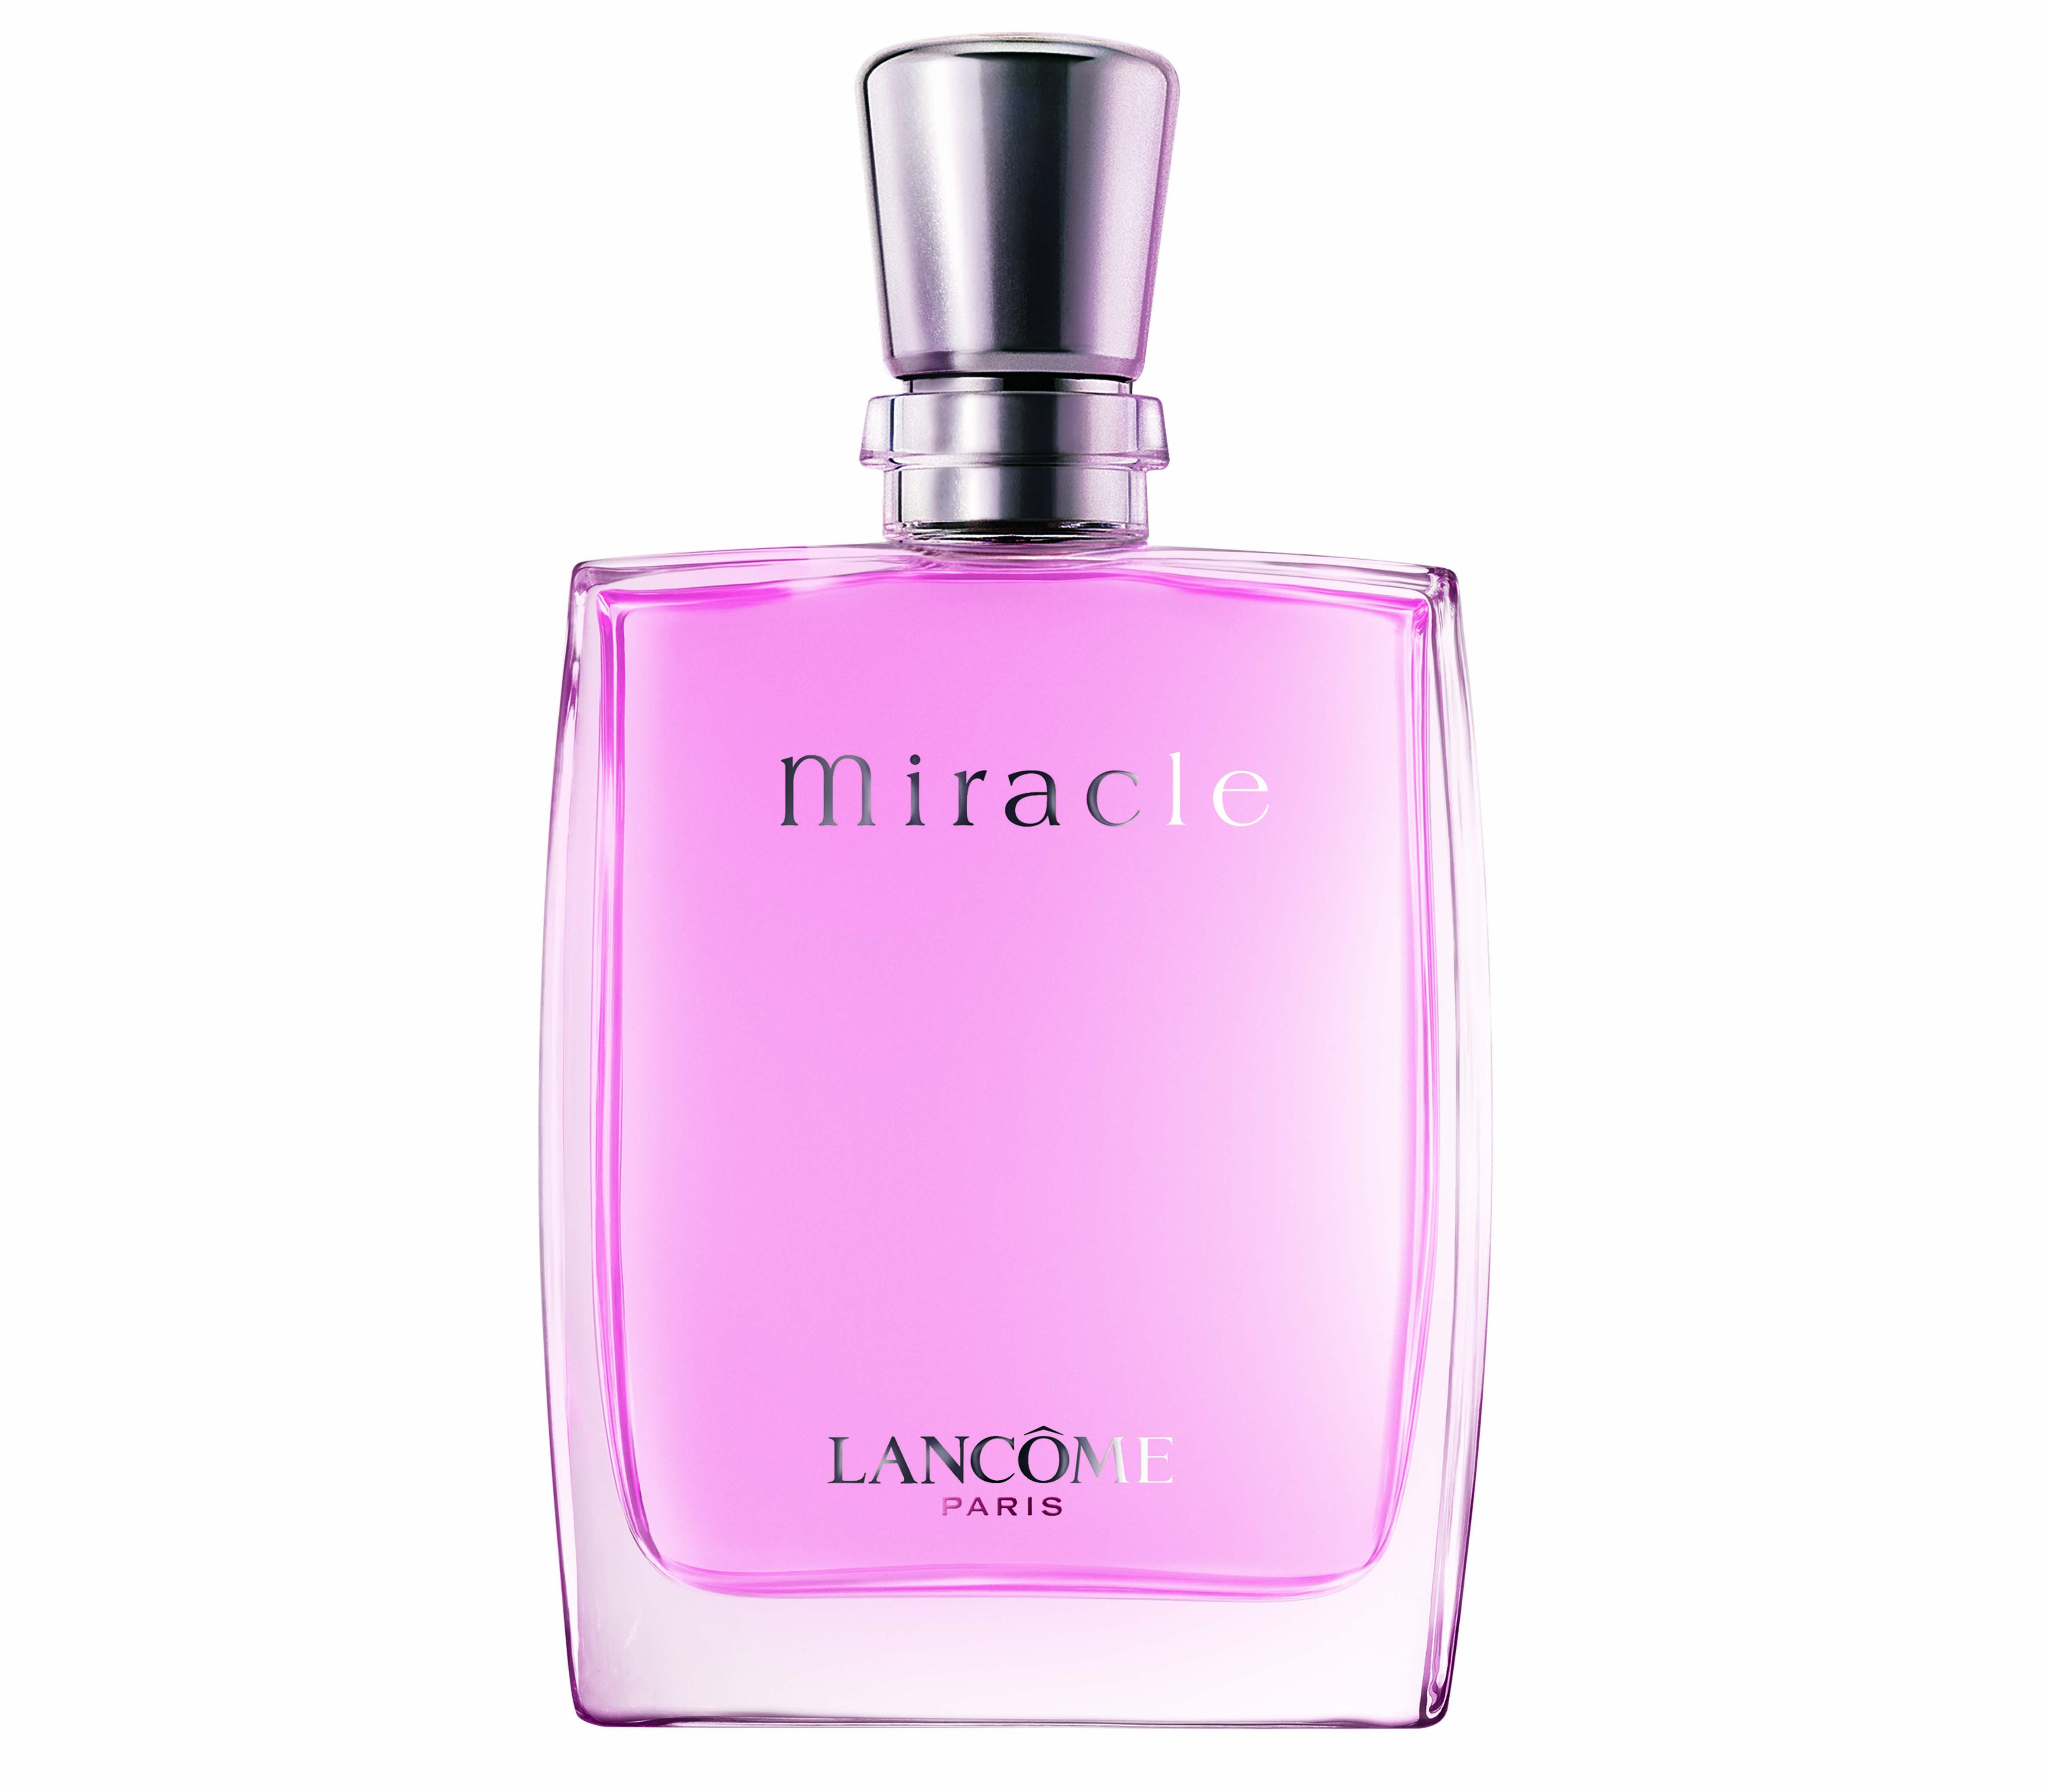 Lancôme Miracle eau de parfum / 100 ml / dames